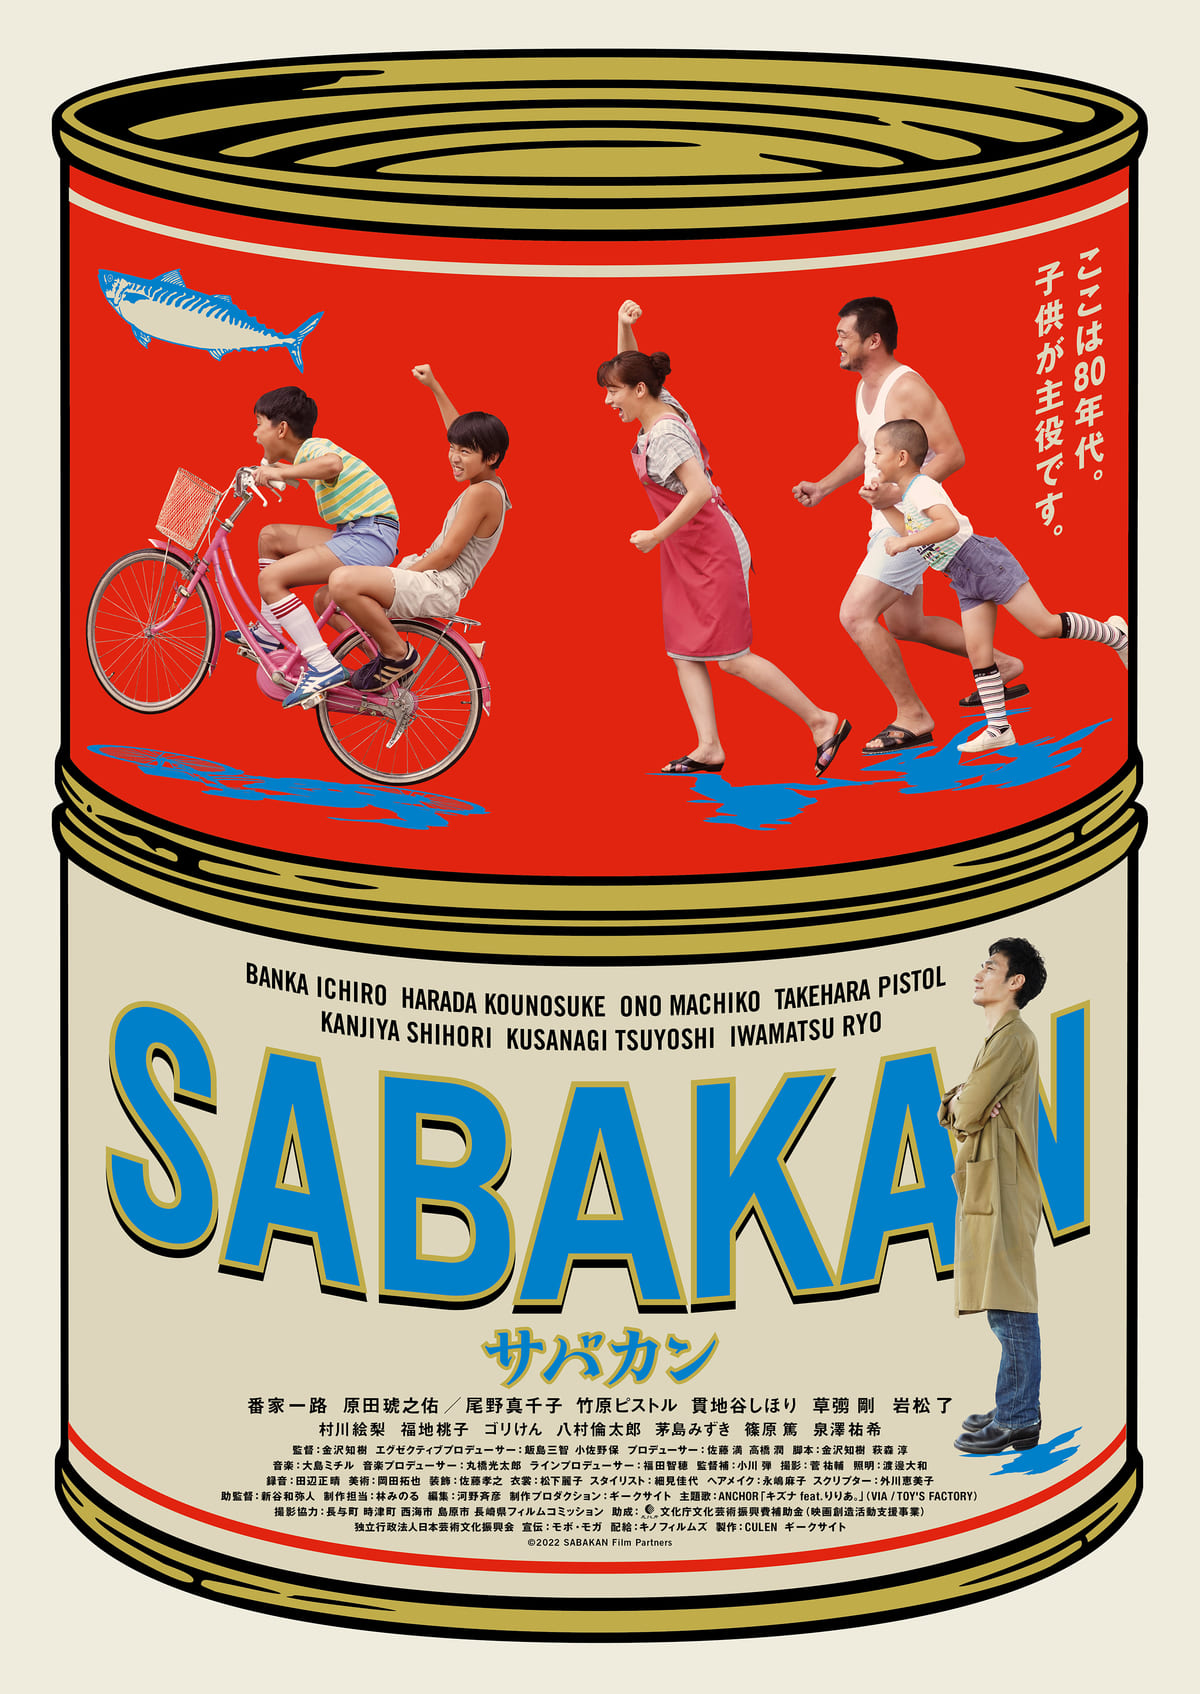 映画「サバカン SABAKAN」と連動した商品